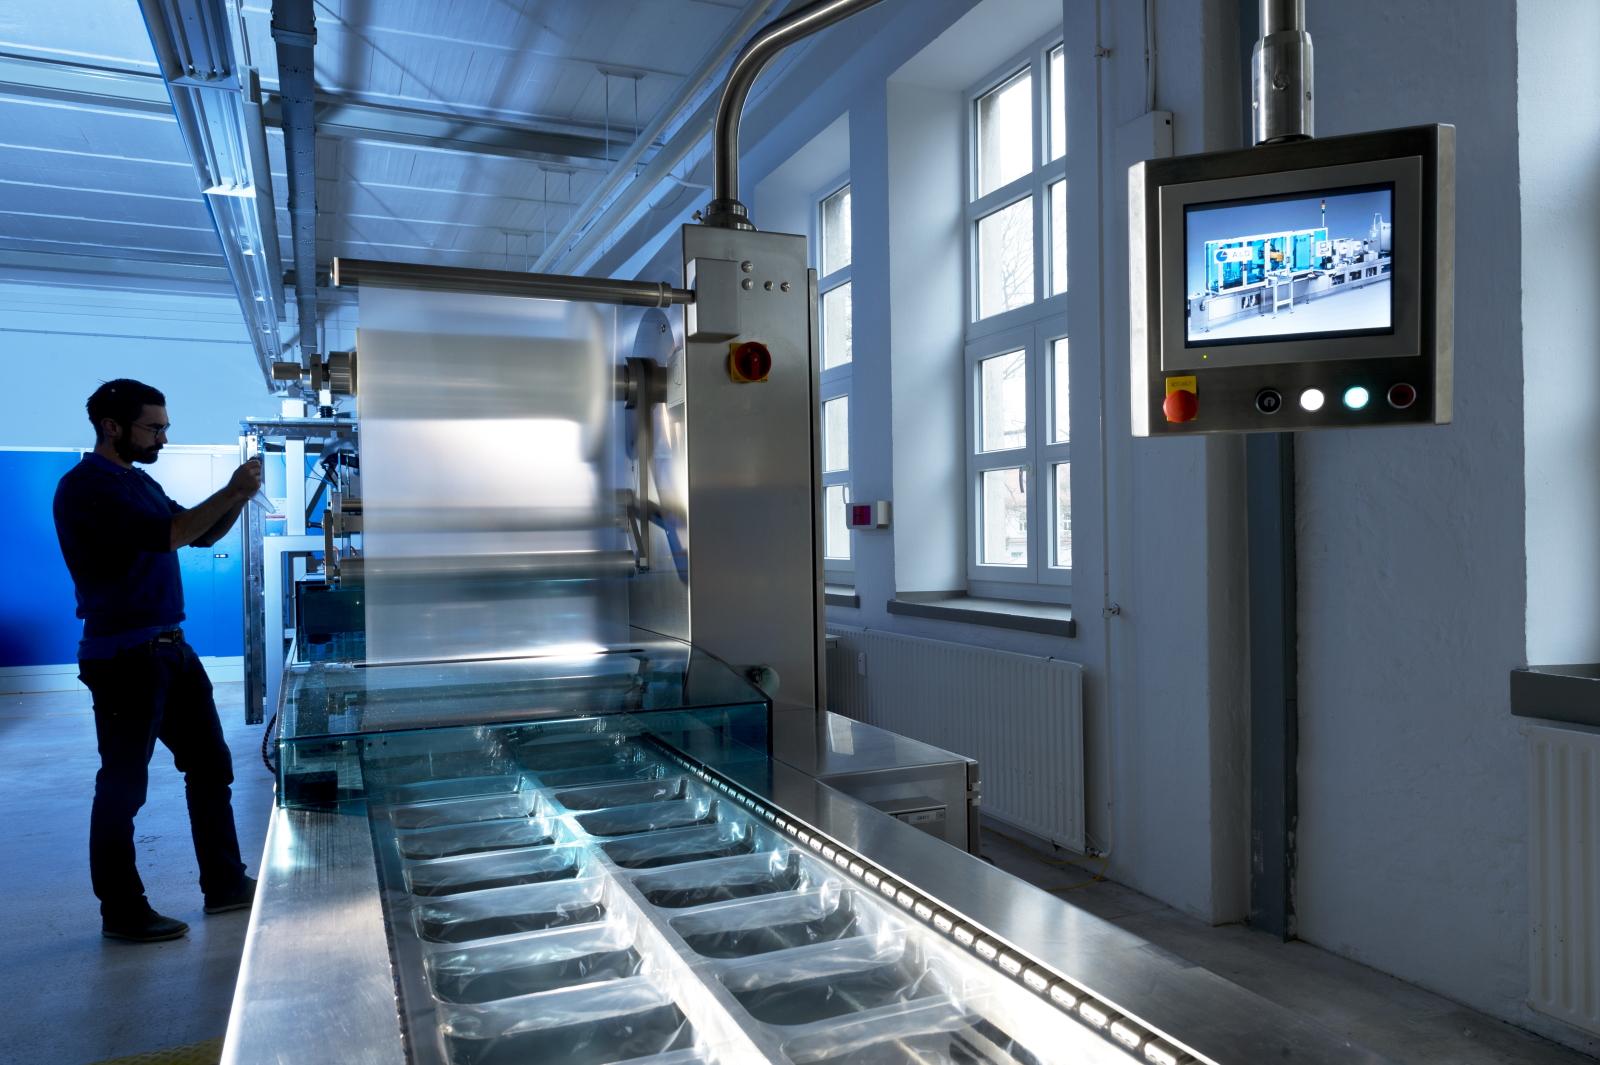 Demonstratoranlagen am Fraunhofer IGCV, wie beispielsweise diese Thermoverpackungsanlage, zeigen, wie sich Anlagen und deren Komponenten energieflexibel nutzen lassen.